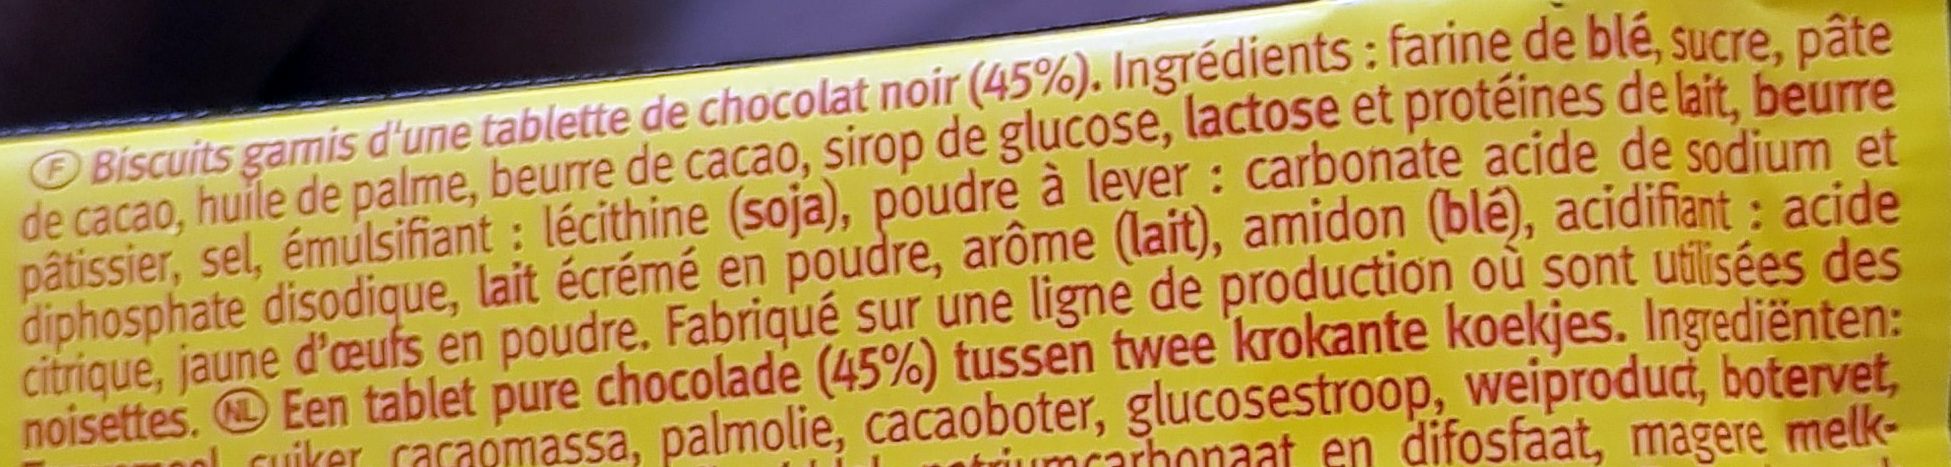 Pick up chocolat noir - Ingredients - fr